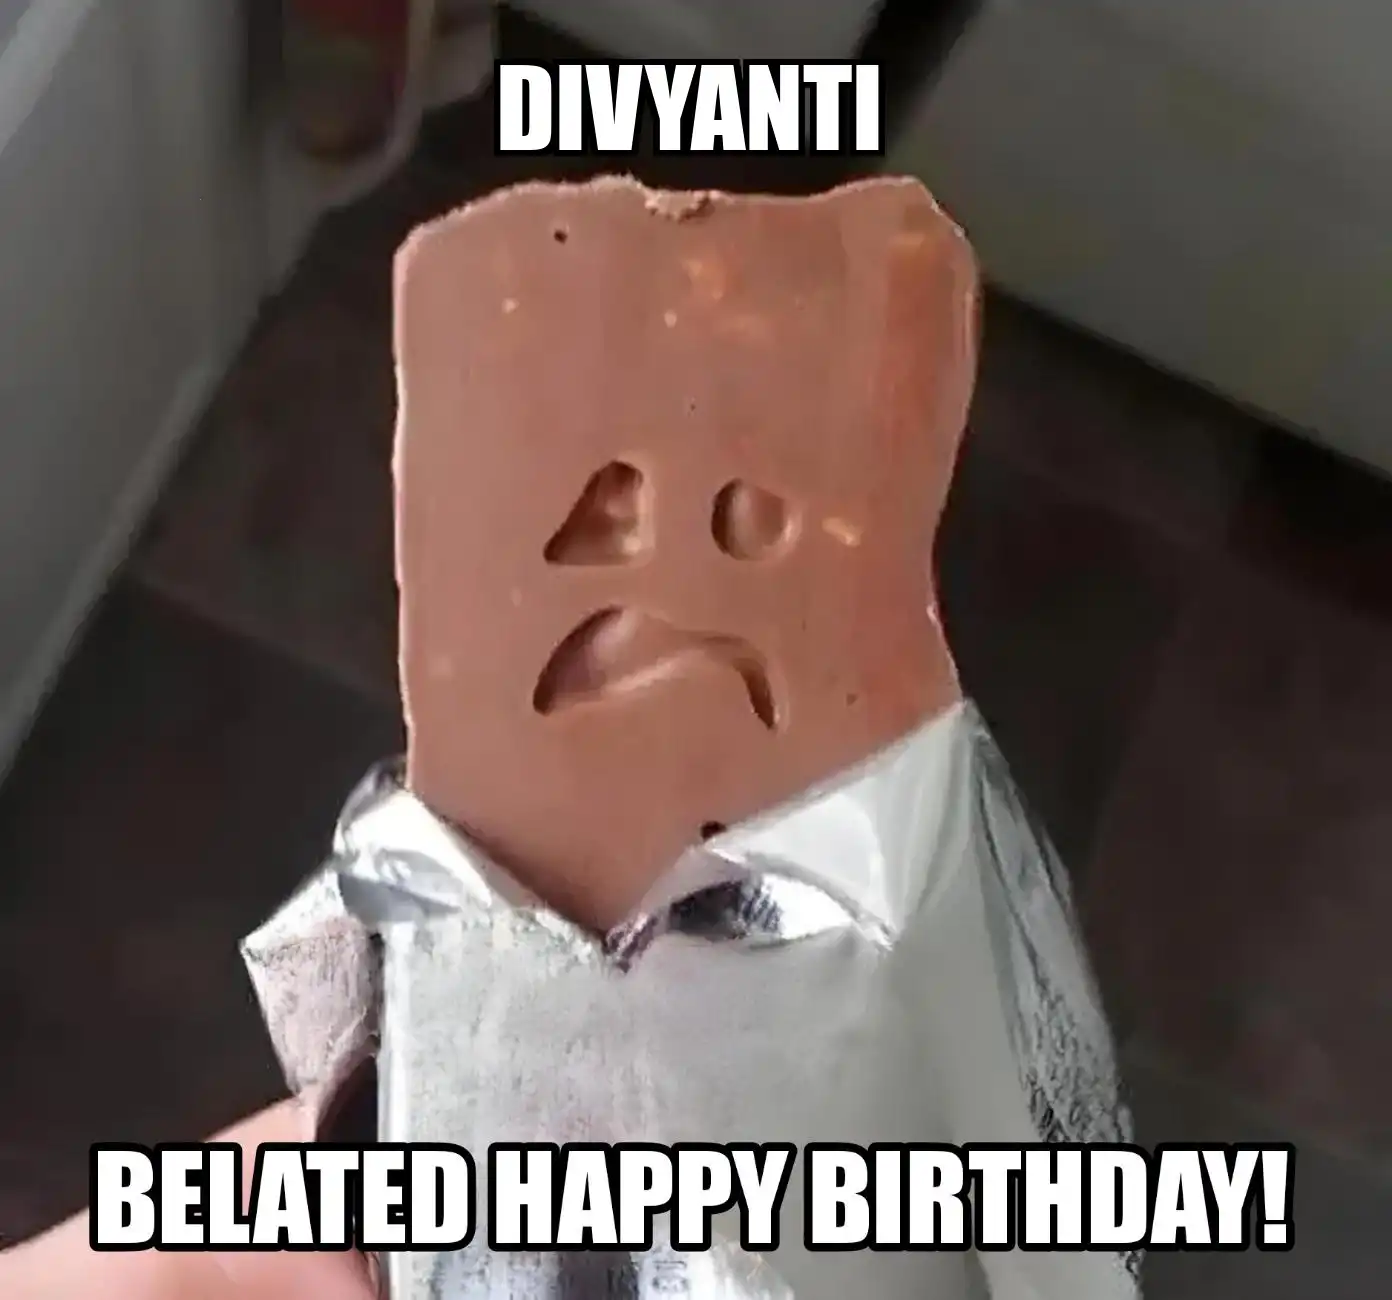 Happy Birthday Divyanti Belated Happy Birthday Meme